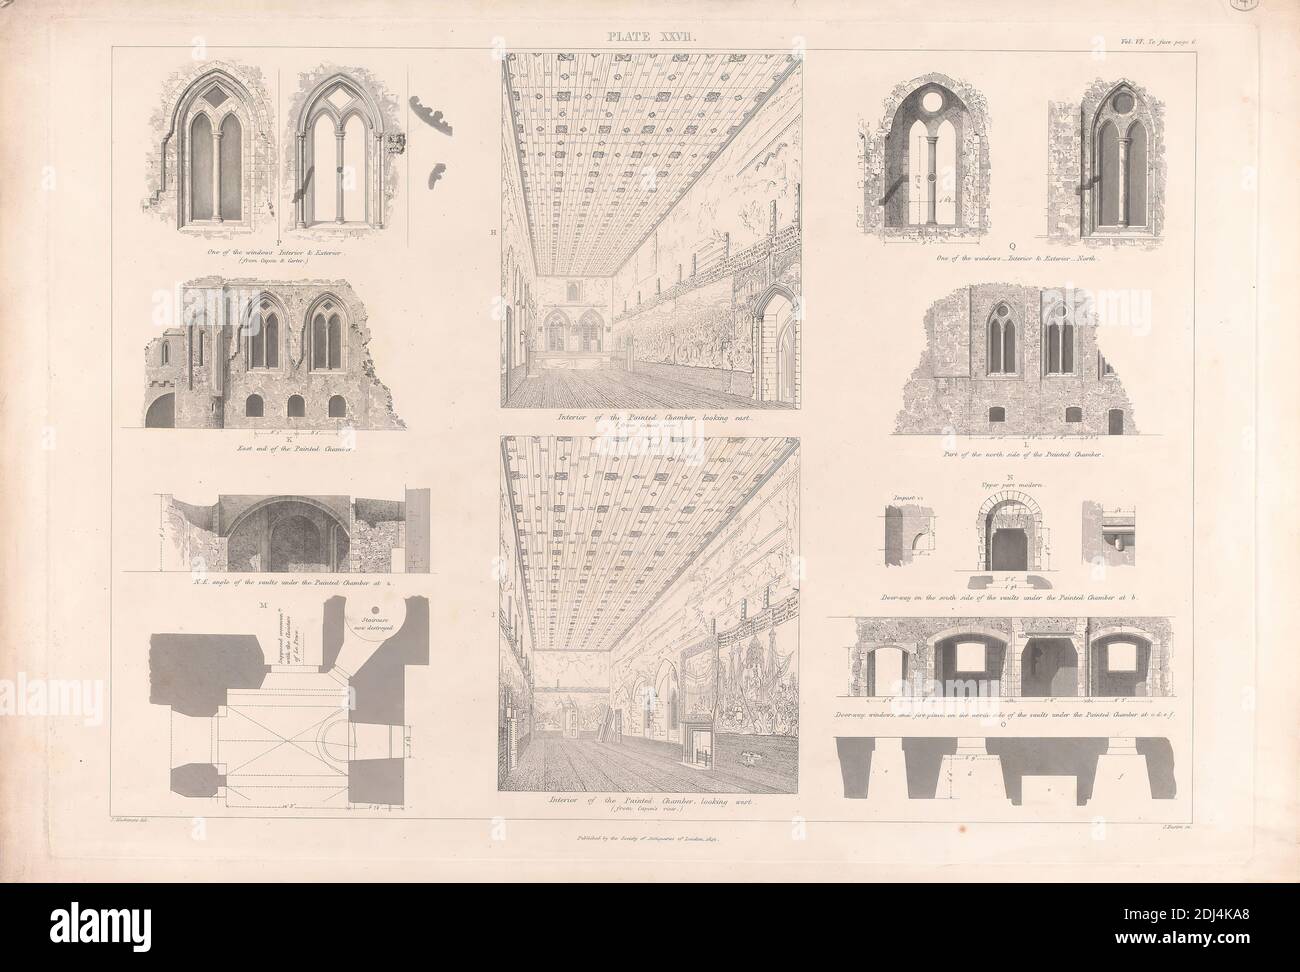 6, plaque XXVII: The Painted Chamber, imprimé par James Basire, 1769–1822, British, After Frederick Mackenzie, 1788–1854, British, 1842, gravure en ligne sur papier vélin blanc, lisse et moyennement épais, feuille: 15 1/8 × 21 7/8 pouces (38.4 × 55.6 cm), plaque: 14 × 20 pouces (35.6 × 50.8 cm), et image: 12 3/4 × 17 15/16 pouces (32.4 × 45.6 cm), sujet architectural, Cité de Westminster, Angleterre, Londres, Palais de Westminster, Royaume-Uni Banque D'Images